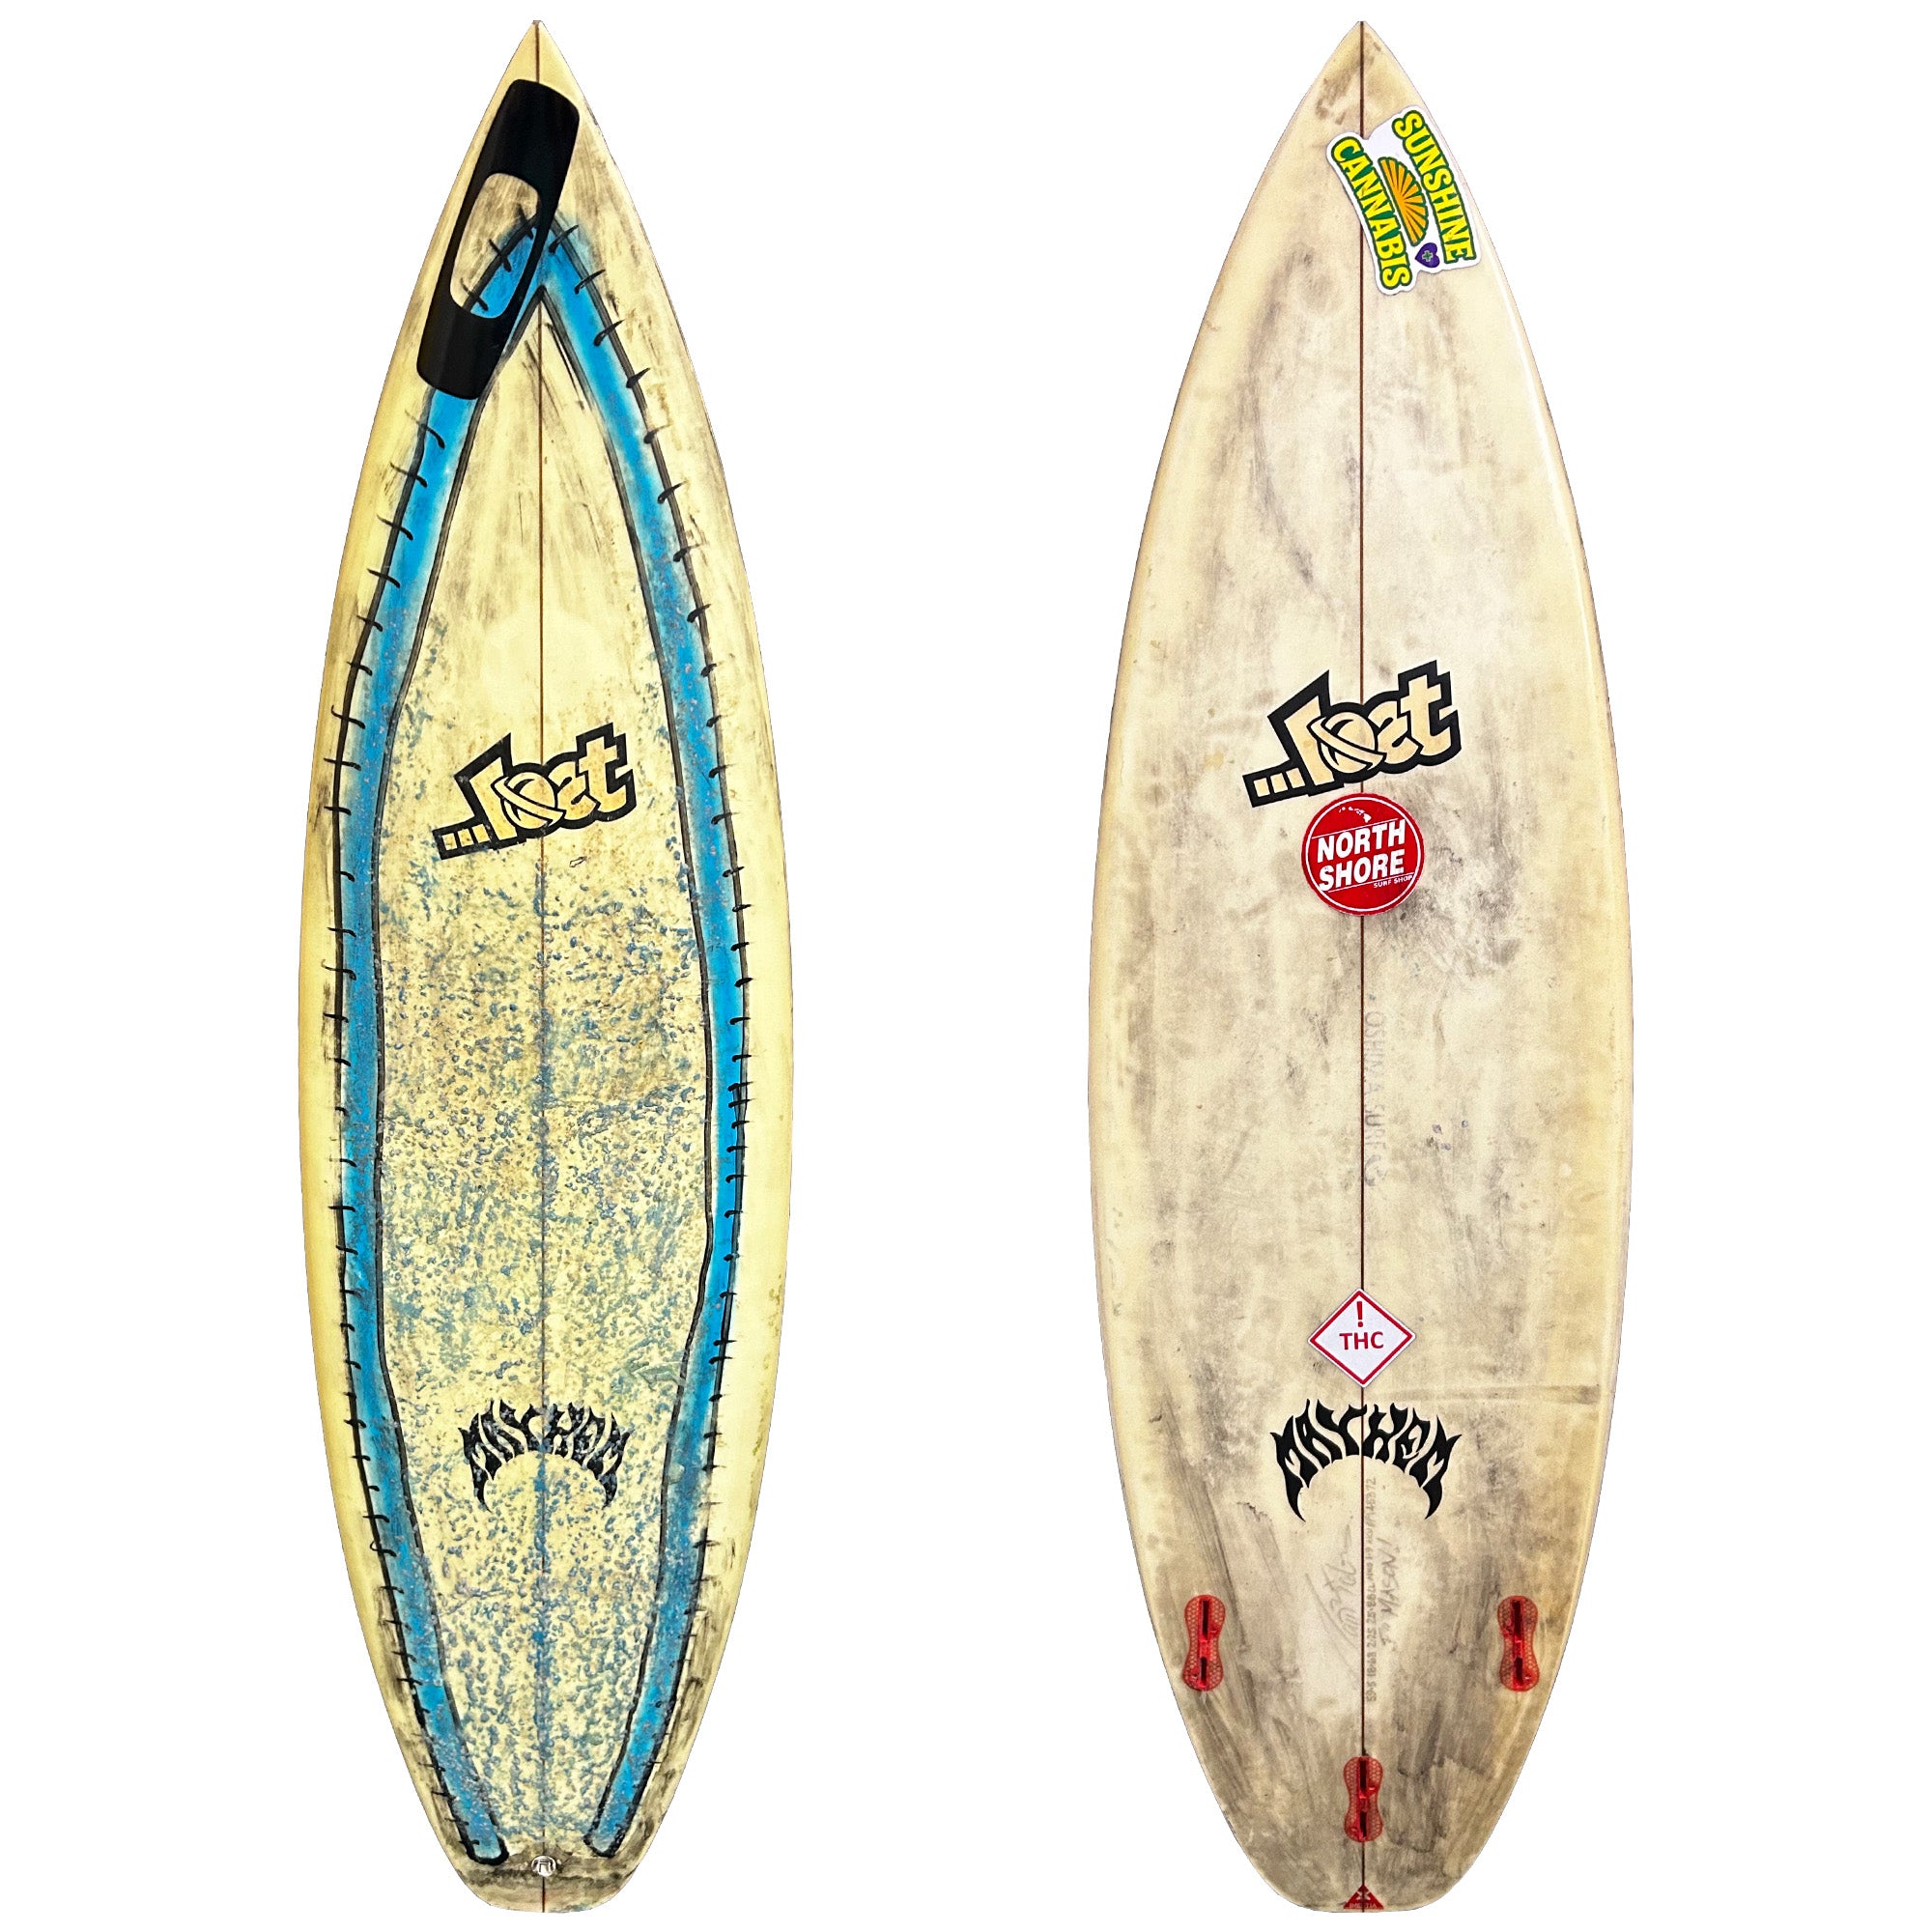 Lost Custom 5'9 1/2 Used Surfboard